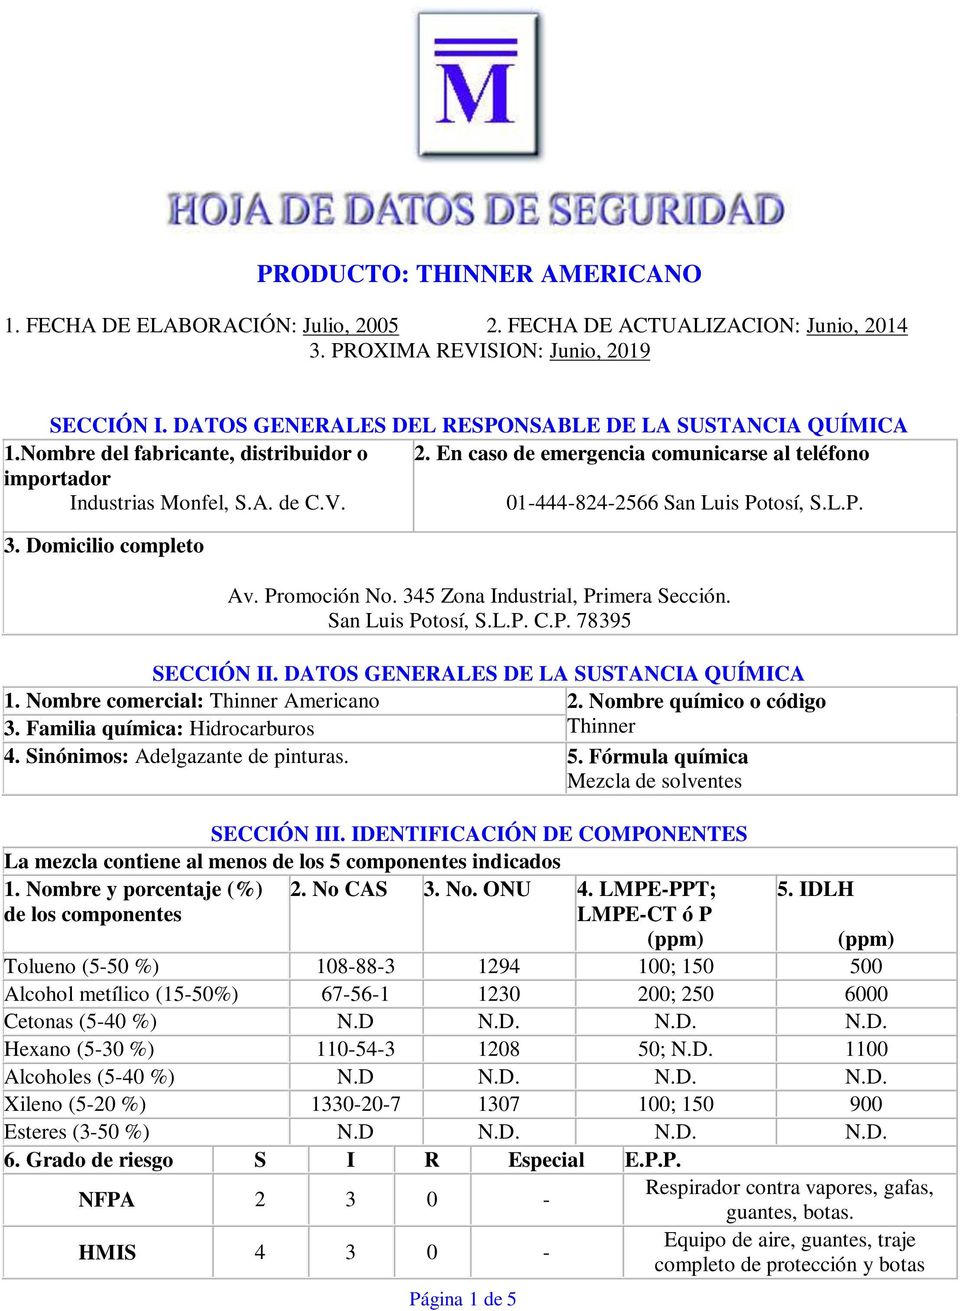 01-444-824-2566 San Luis Potosí, S.L.P. 3. Domicilio completo Av. Promoción No. 345 Zona Industrial, Primera Sección. San Luis Potosí, S.L.P. C.P. 78395 SECCIÓN II.